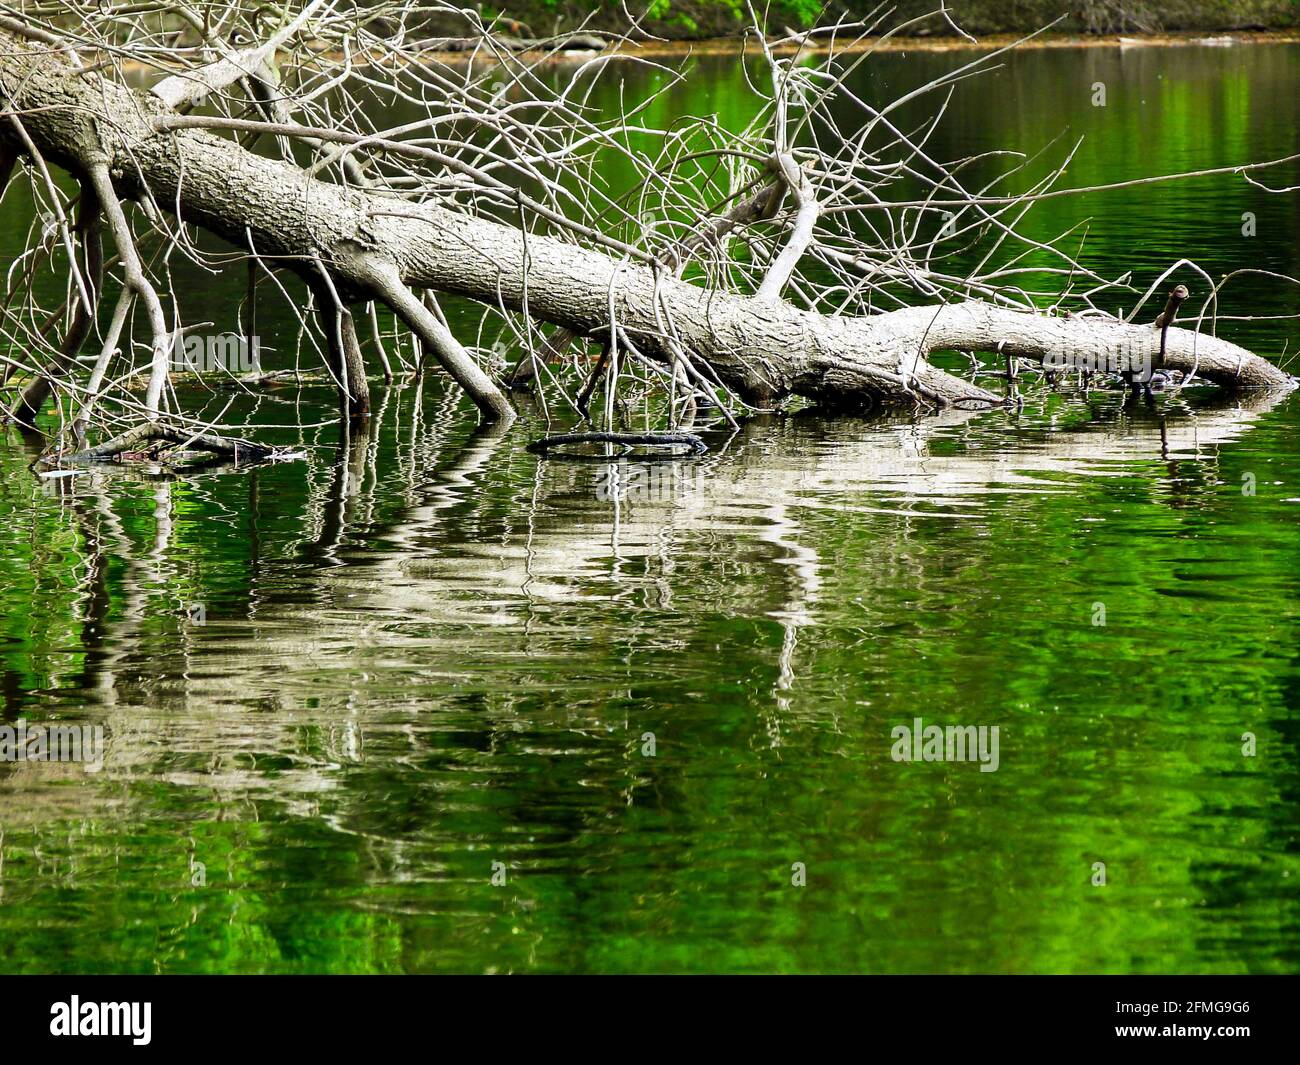 tronco di salice caduto nell'acqua verde del lago con riflessi. concetto di natura e di outdoor. tranquilla scena naturale di primavera. colori verde brillante. Foto Stock